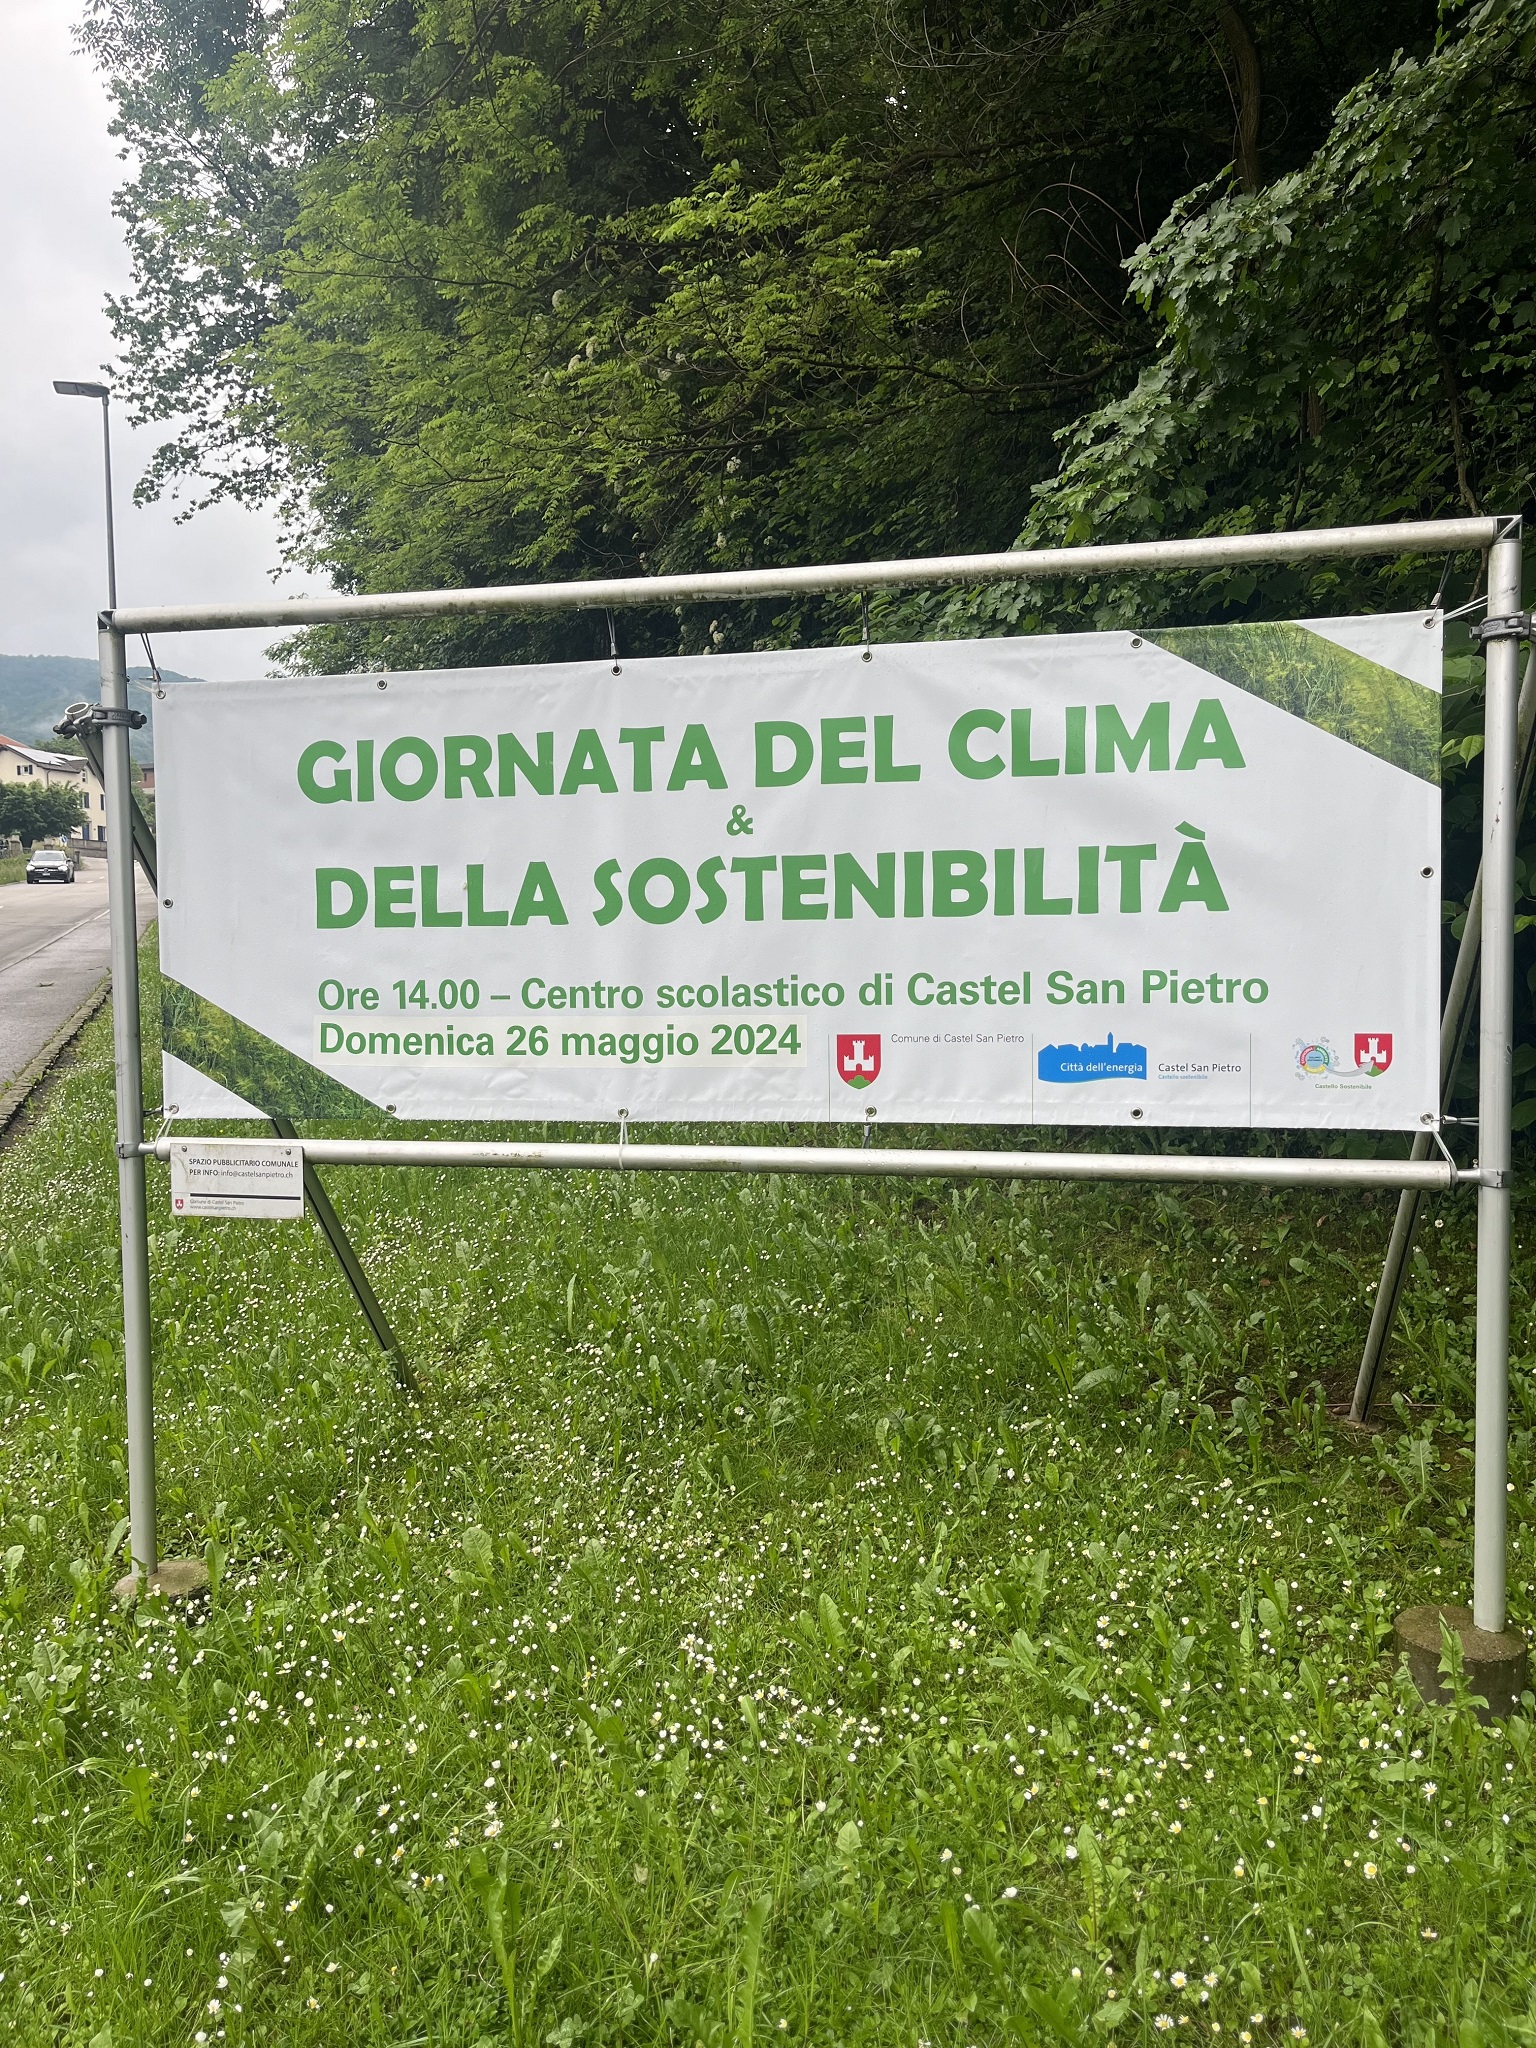 GIORNATA DEL CLIMA & DELLA SOSTENIBILITÀ